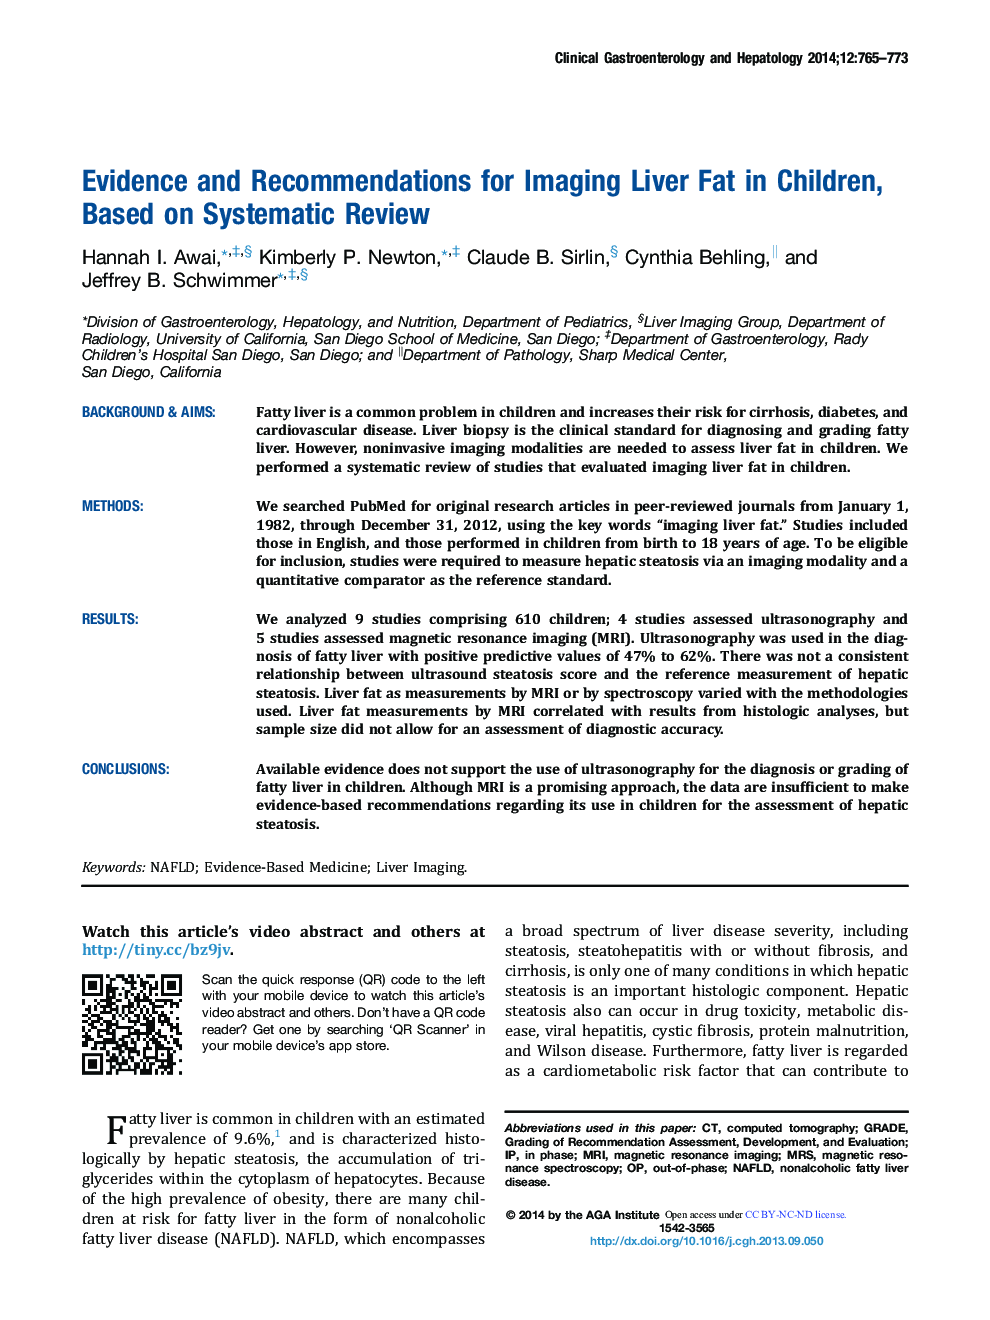 مقاله اصلی بررسی های سیستماتیک و متاآنالیز ها اطالعات و توصیه هایی برای تصویربرداری چربی های کبدی در کودکان براساس بررسی سیستماتیک 